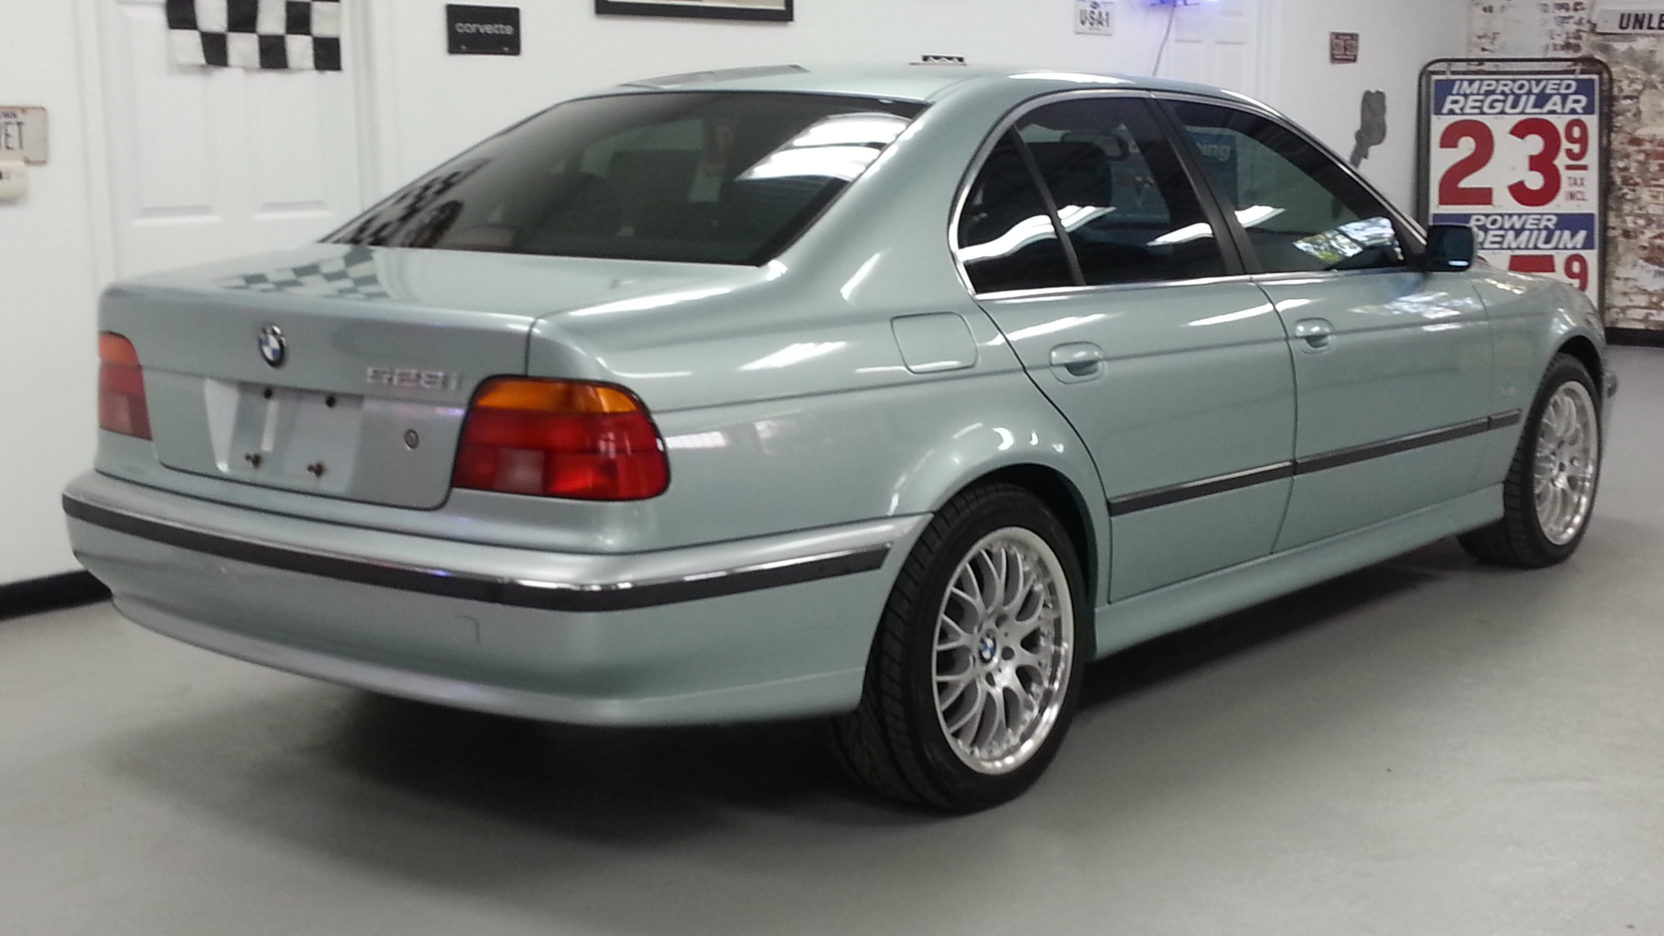 1997 BMW 528i Sedan | T118 | Kansas City 2013